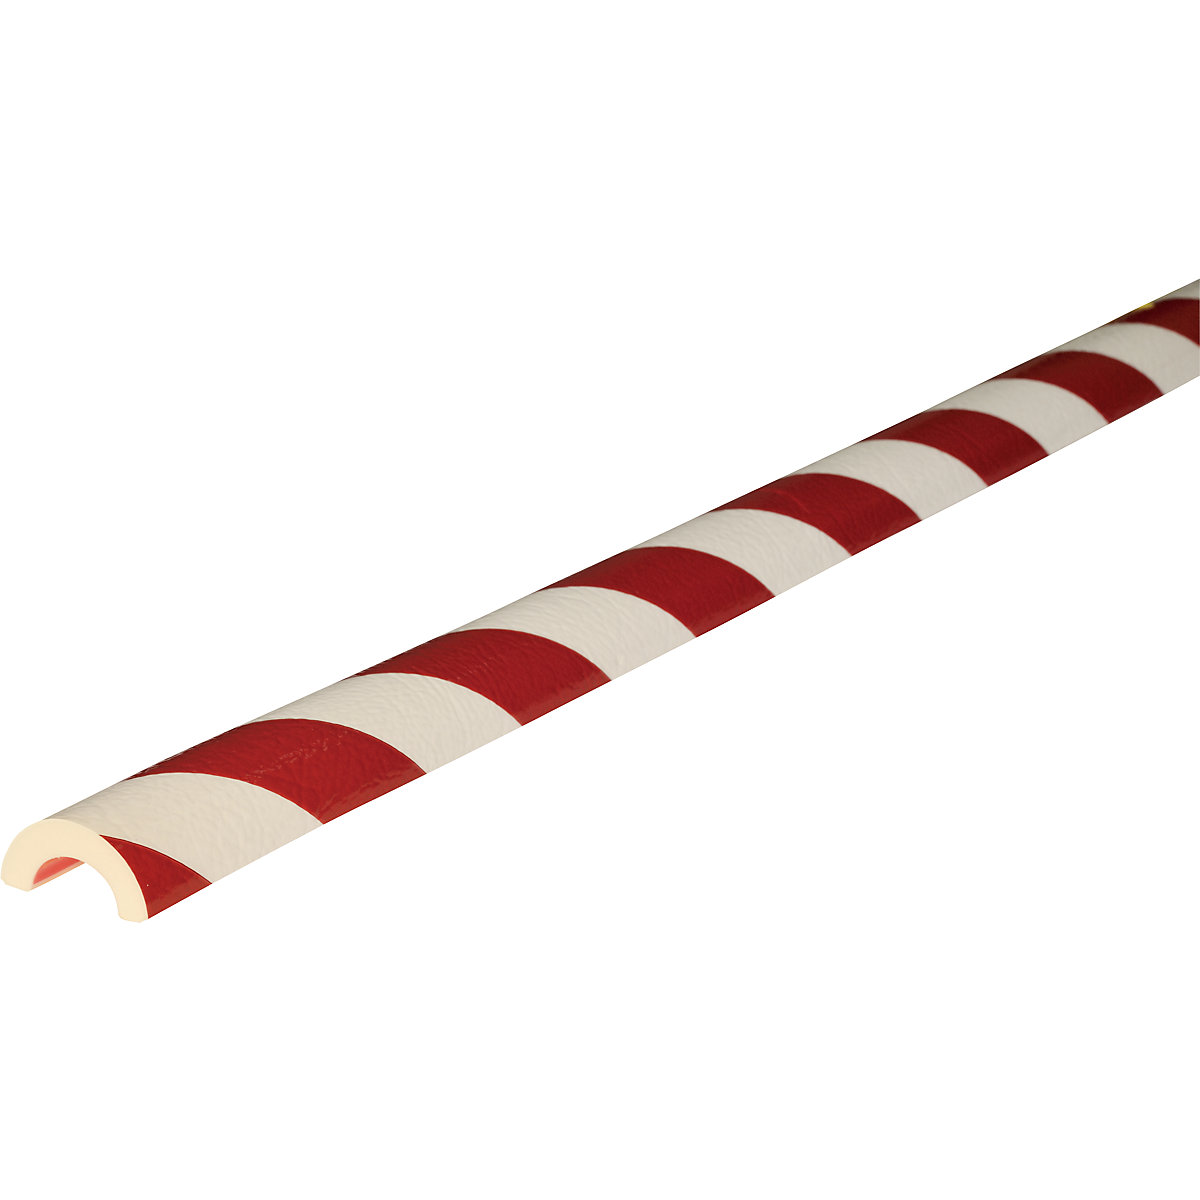 Protección de tubos Knuffi® – SHG, tipo R30, 1 rollo de 5 m, en rojo y blanco-10